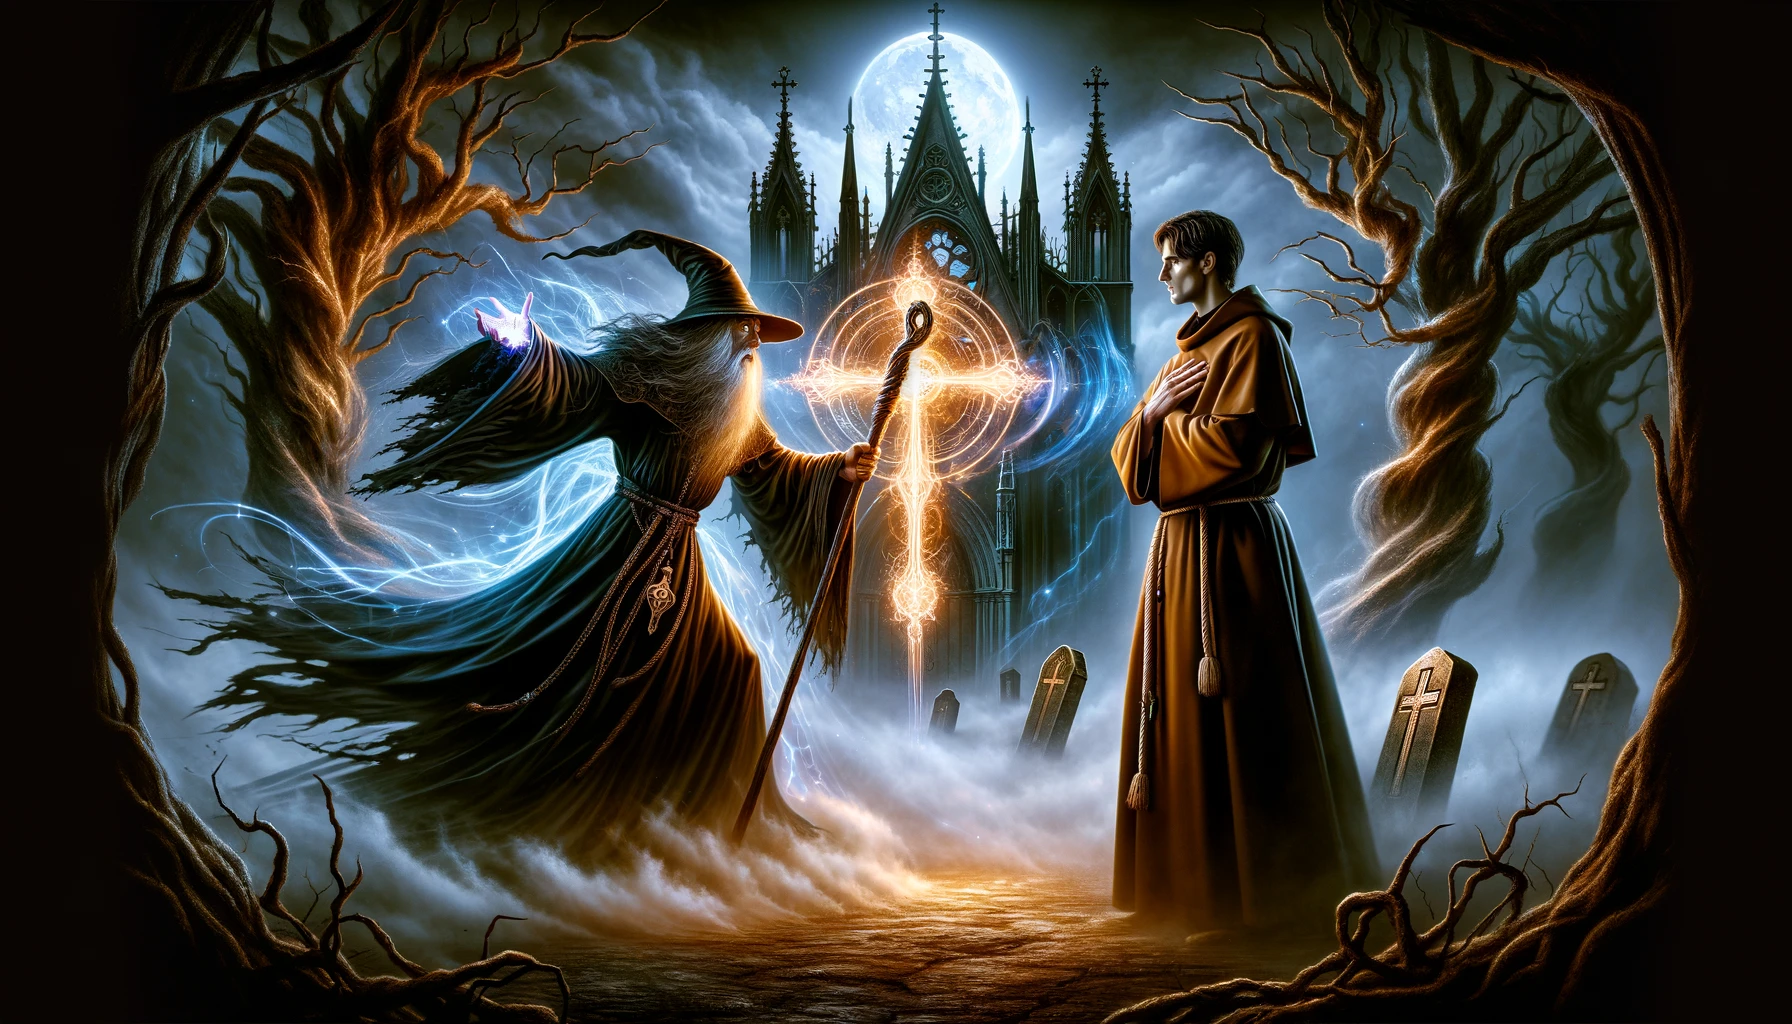 Illustrazione che rappresenta uno stregone e un frate in un duello magico in uno stile che fonde elementi fiabeschi e gotici